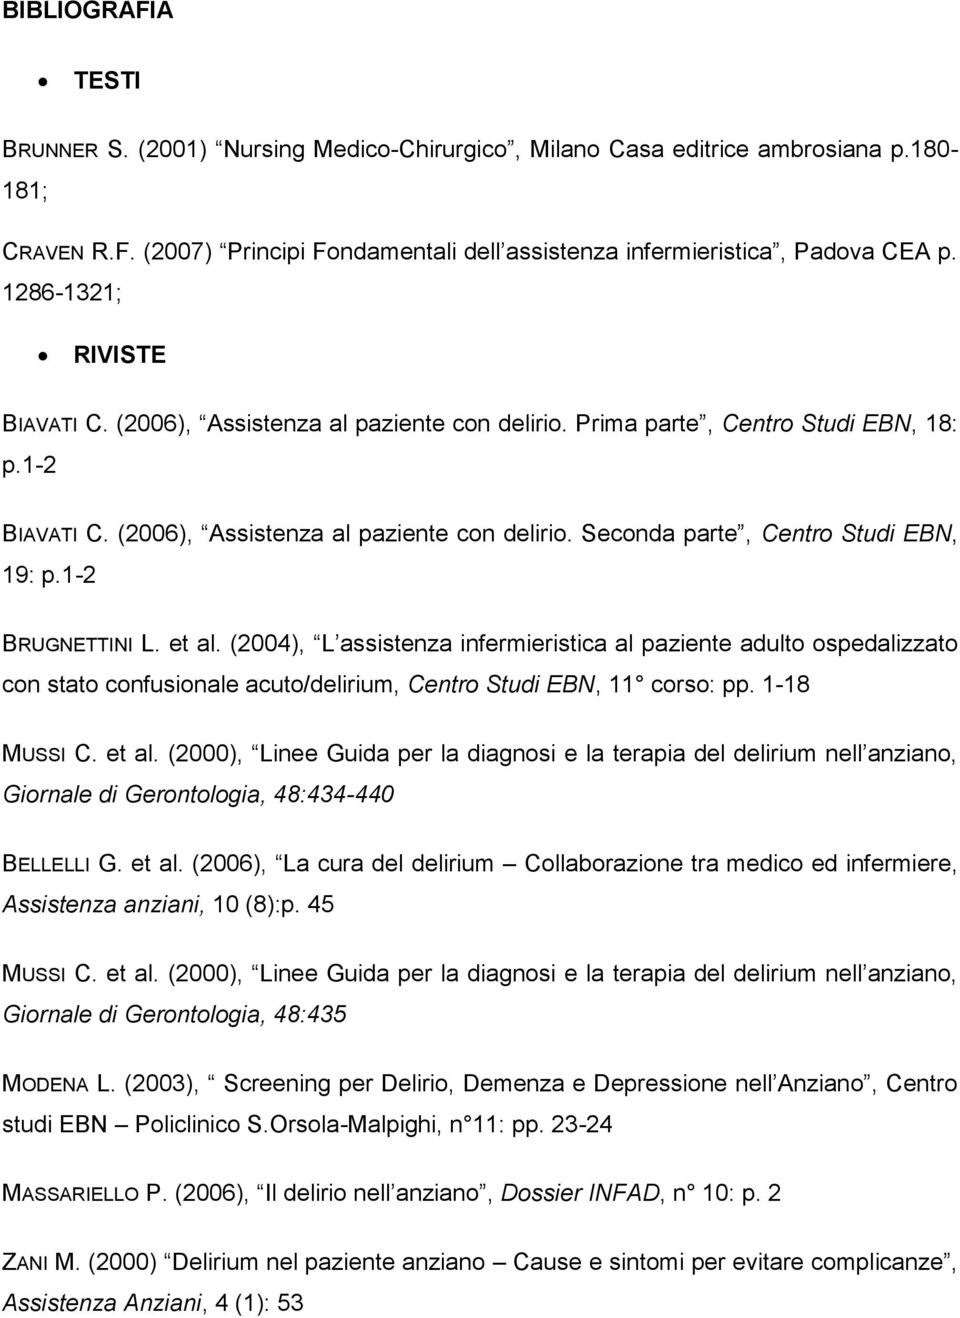 1-2 BRUGNETTINI L. et al. (2004), L assistenza infermieristica al paziente adulto ospedalizzato con stato confusionale acuto/delirium, Centro Studi EBN, 11 corso: pp. 1-18 MUSSI C. et al. (2000), Linee Guida per la diagnosi e la terapia del delirium nell anziano, Giornale di Gerontologia, 48:434-440 BELLELLI G.